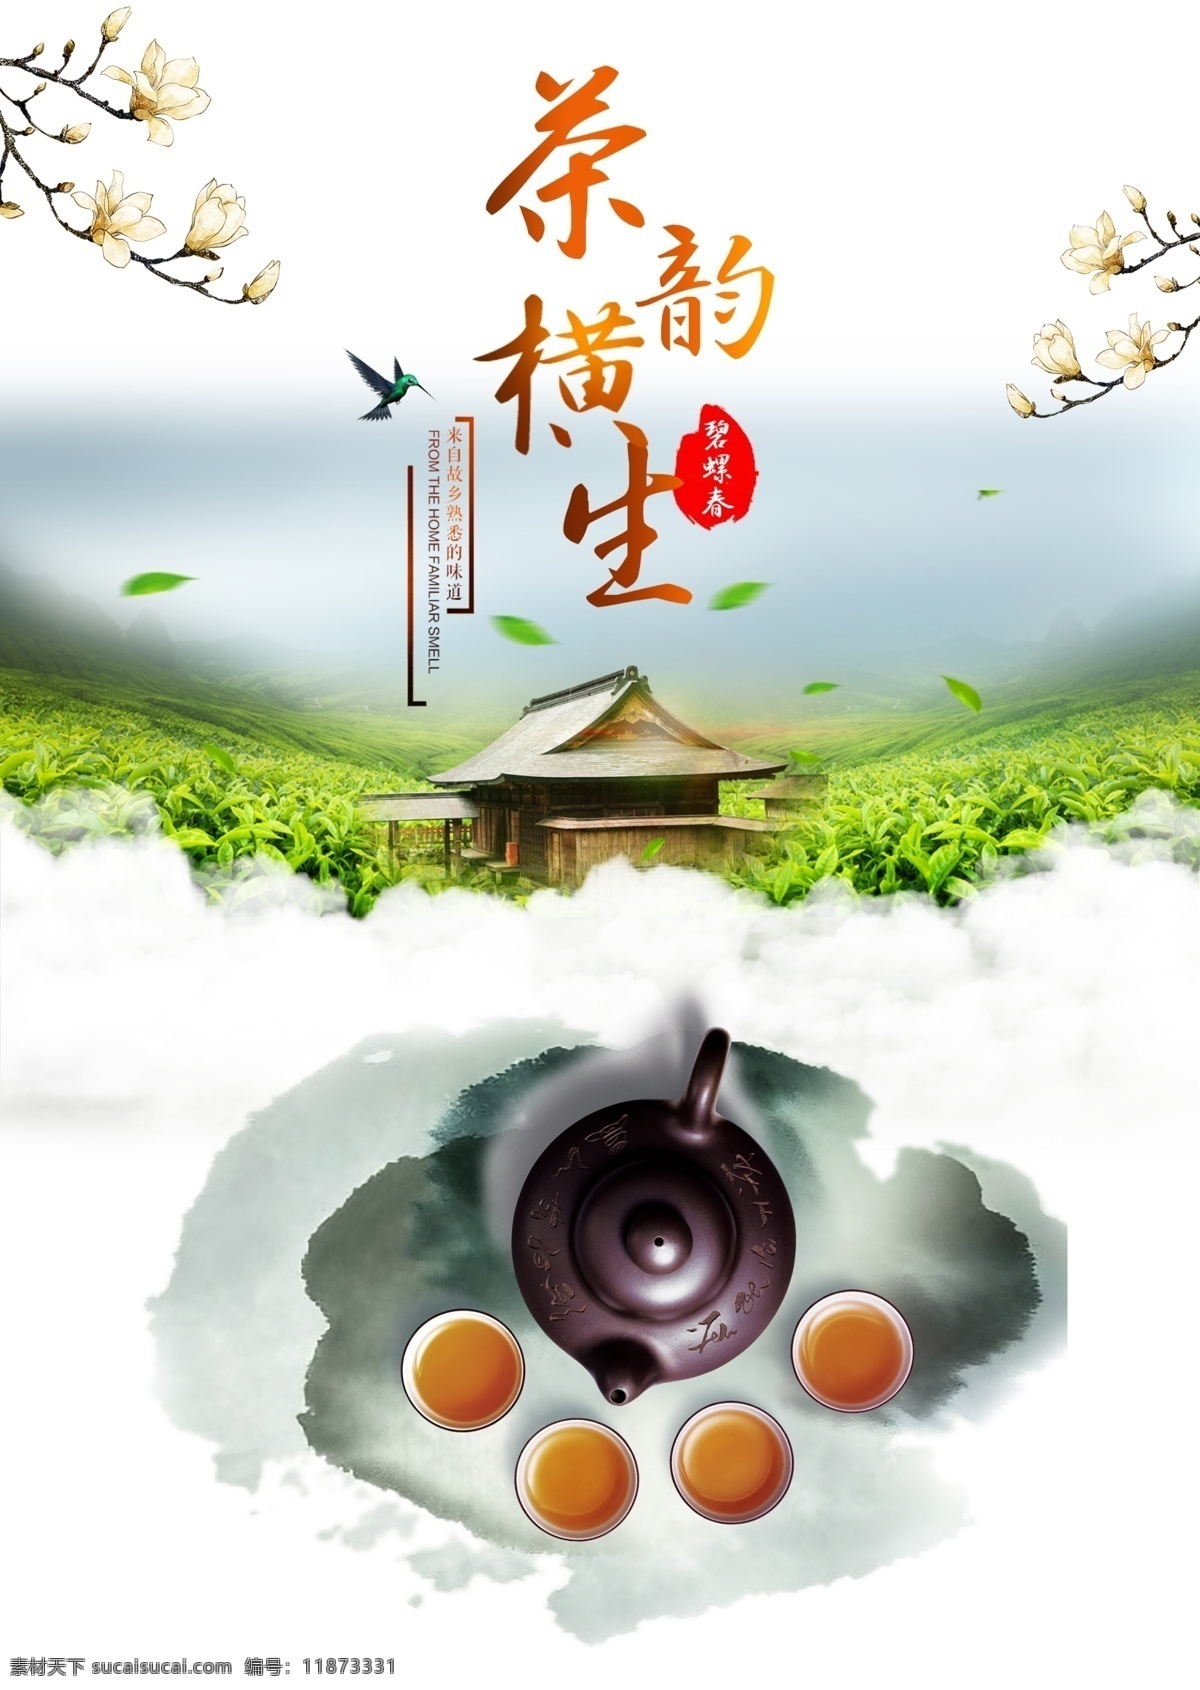 茶道 文化 茶文化 海报 碧螺春 茶馆海报 茶香 品茶创意海报